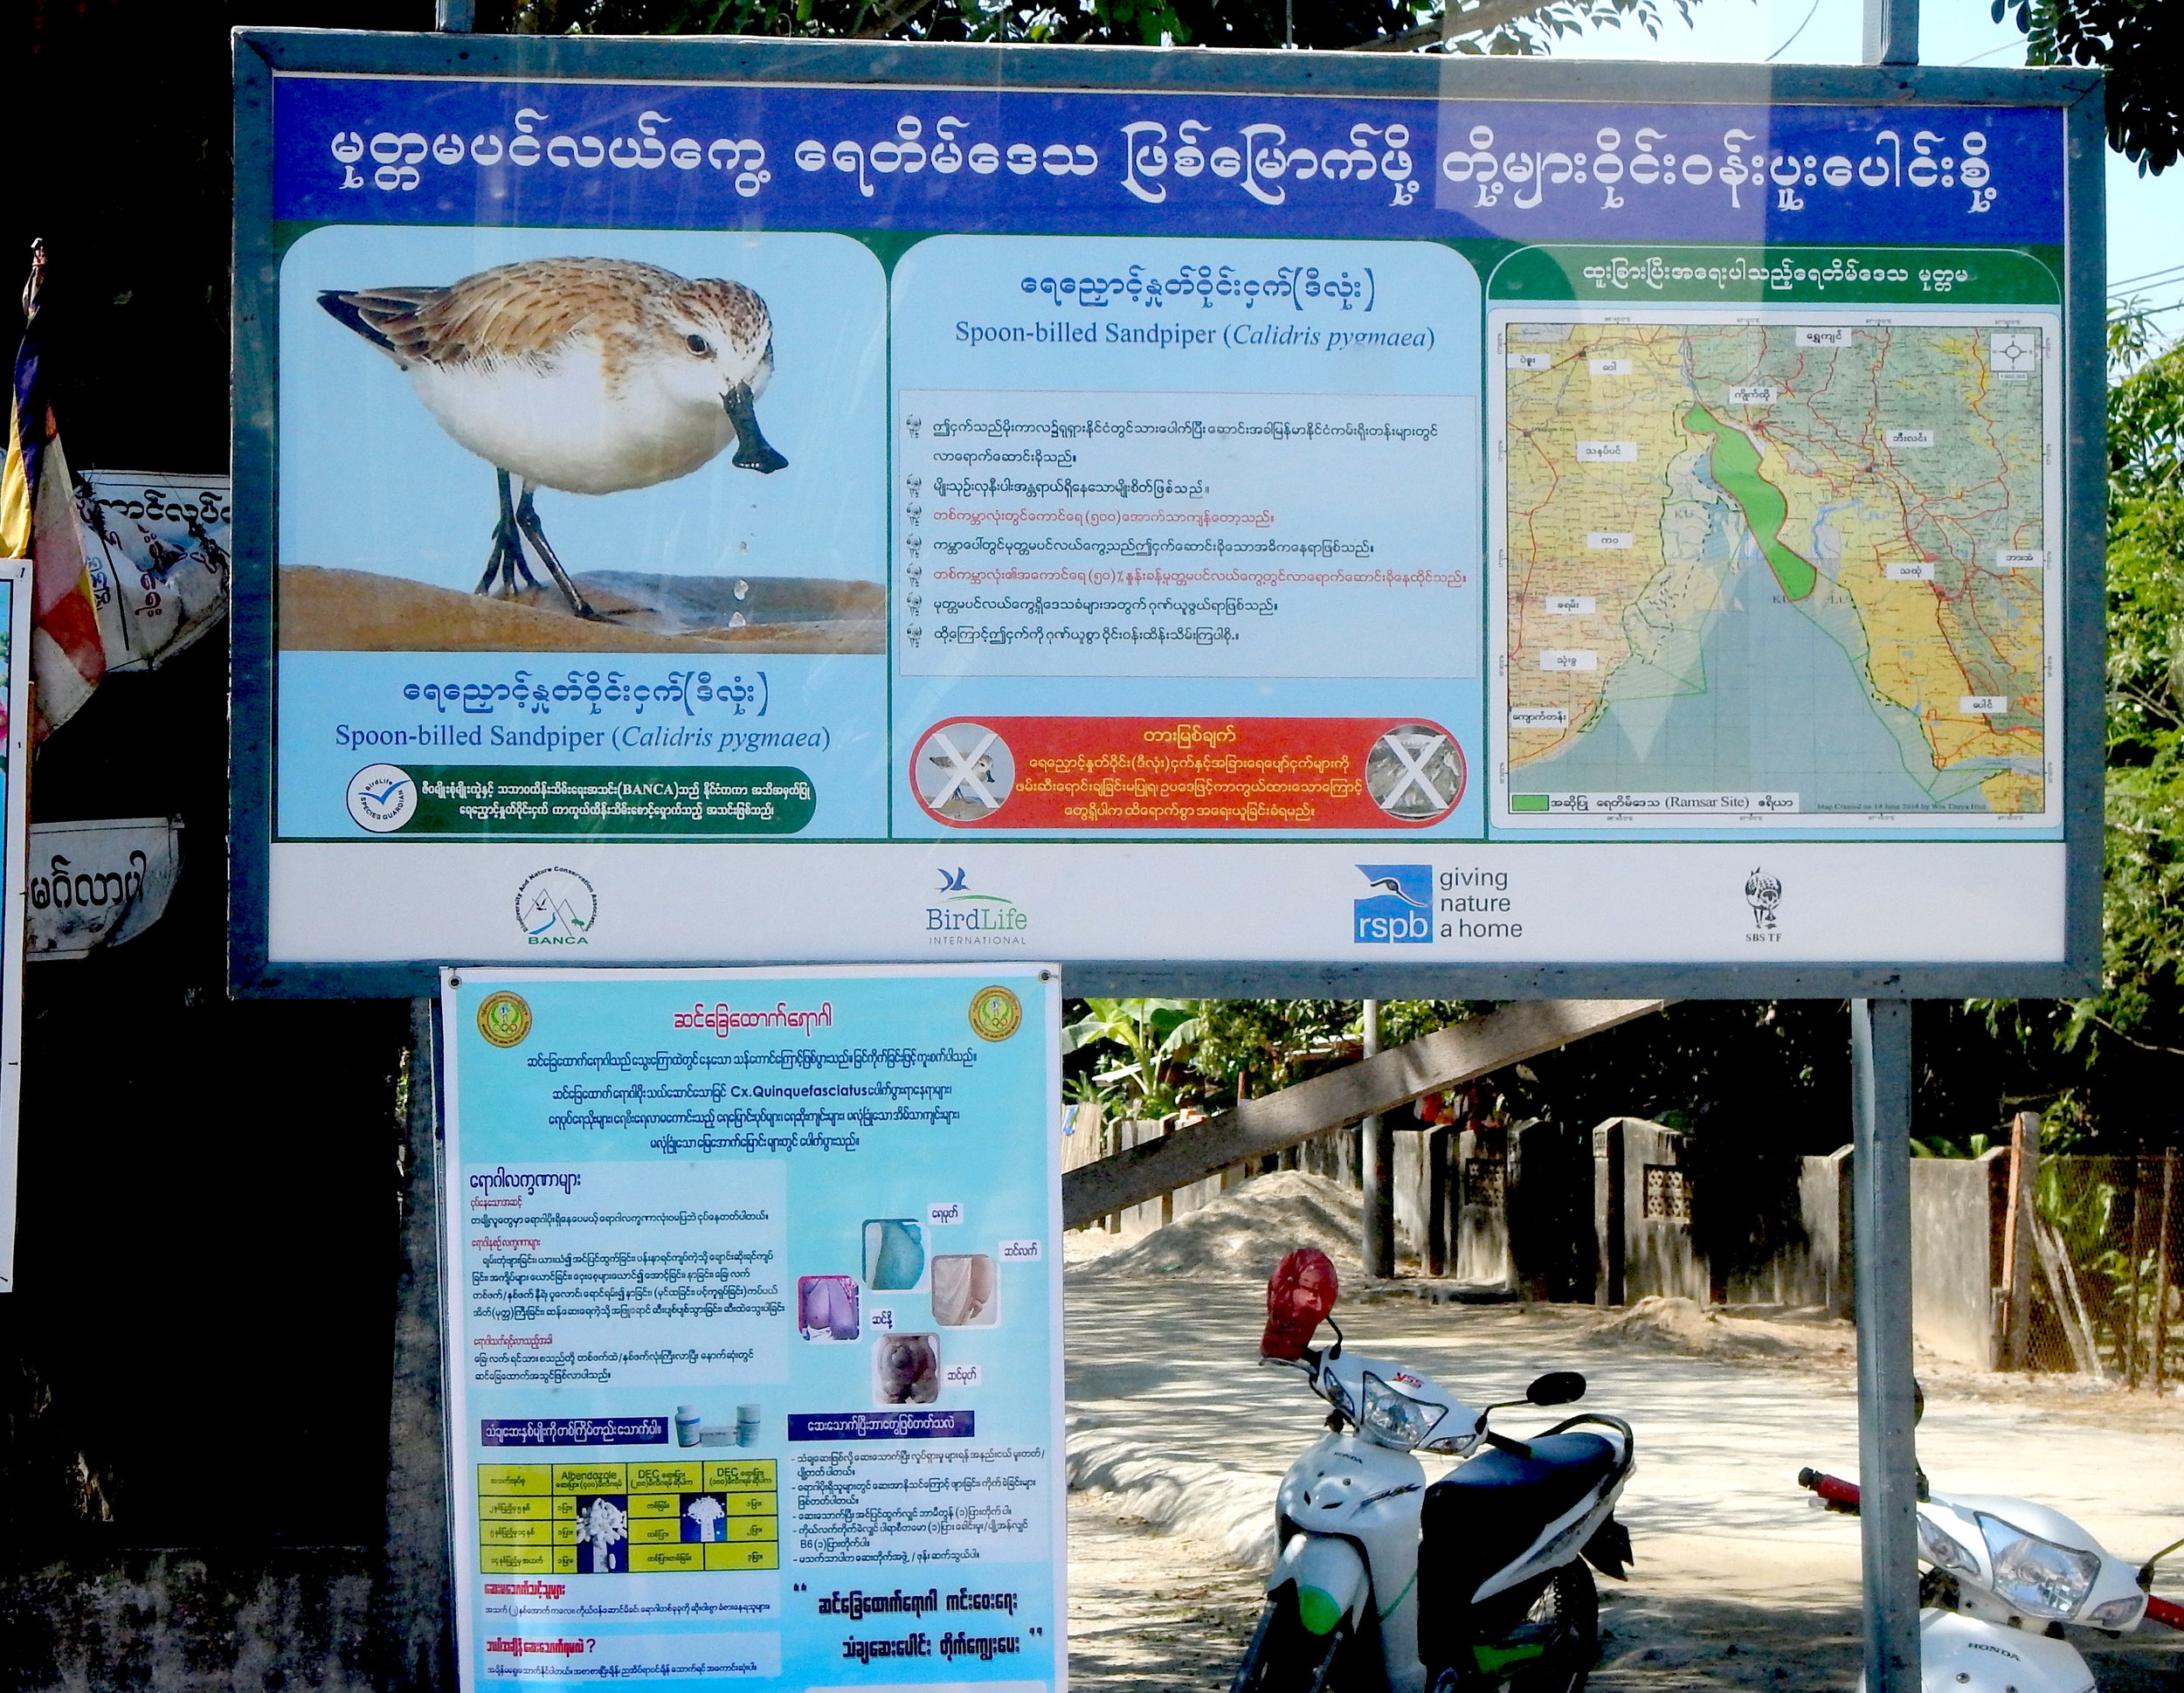 Sbs Sign in Myanmar.jpg